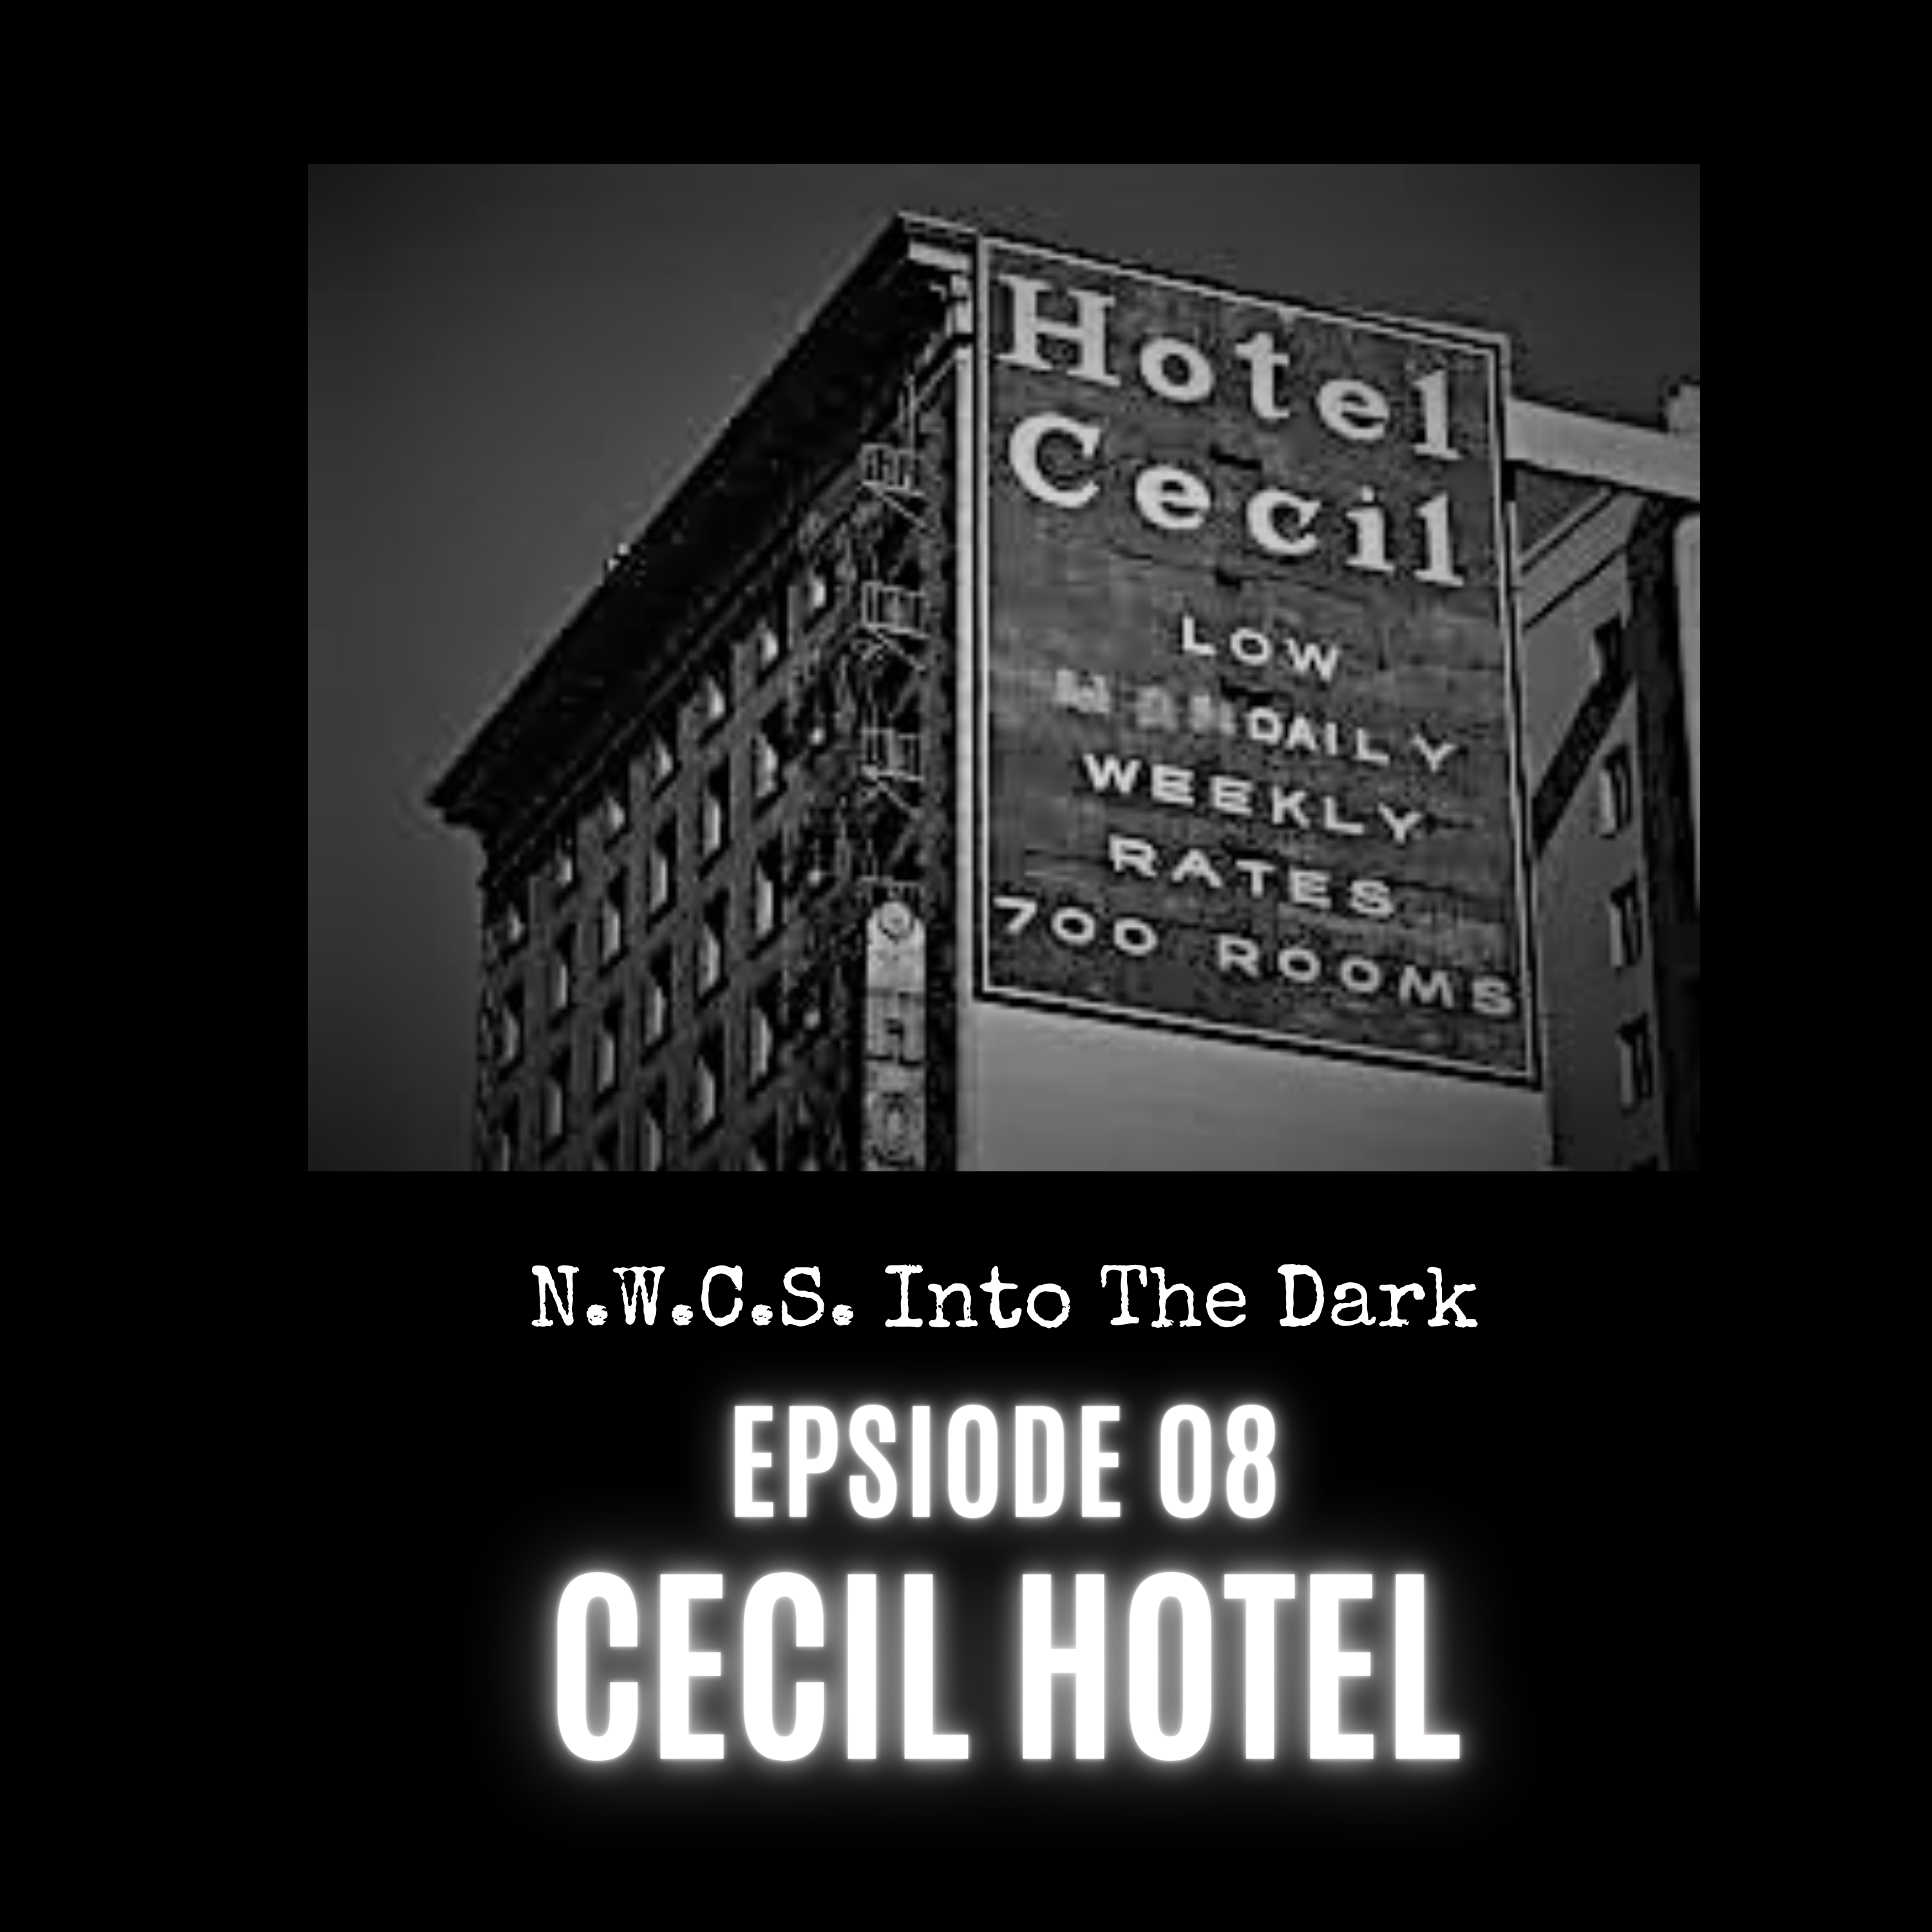 N.W.C.S. Into The Dark Episode 08 Cecil Hotel